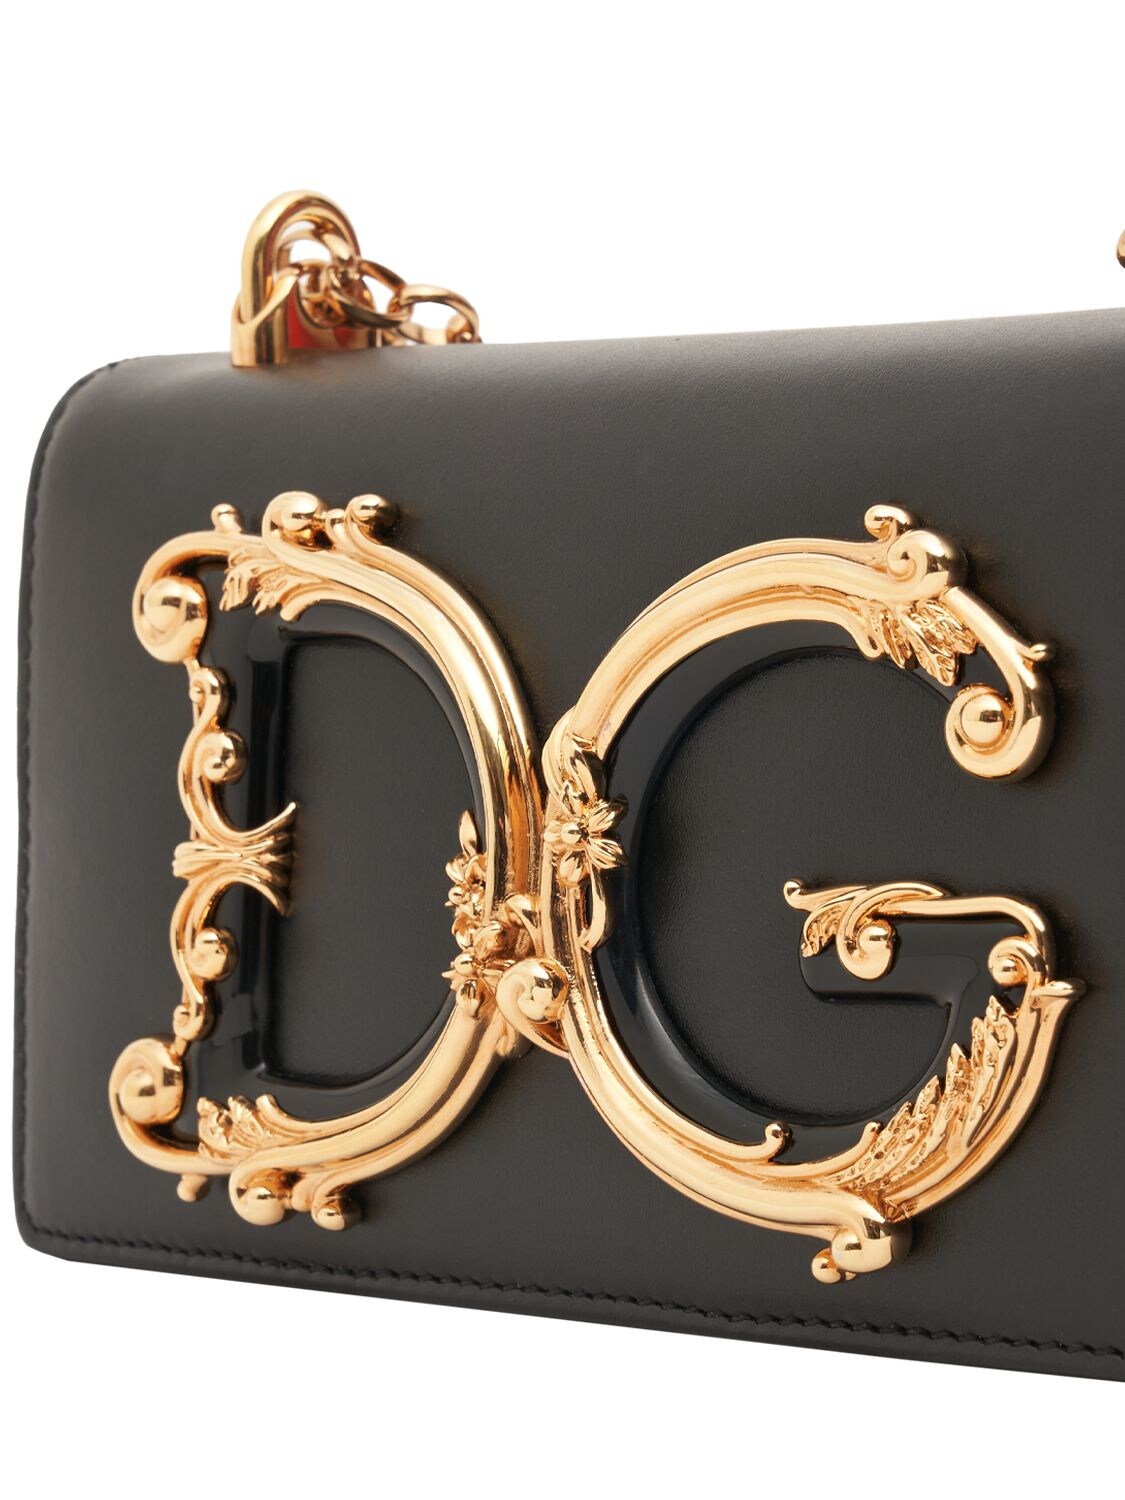 Shop Dolce & Gabbana Mini Dg Girls Leather Shoulder Bag In Black